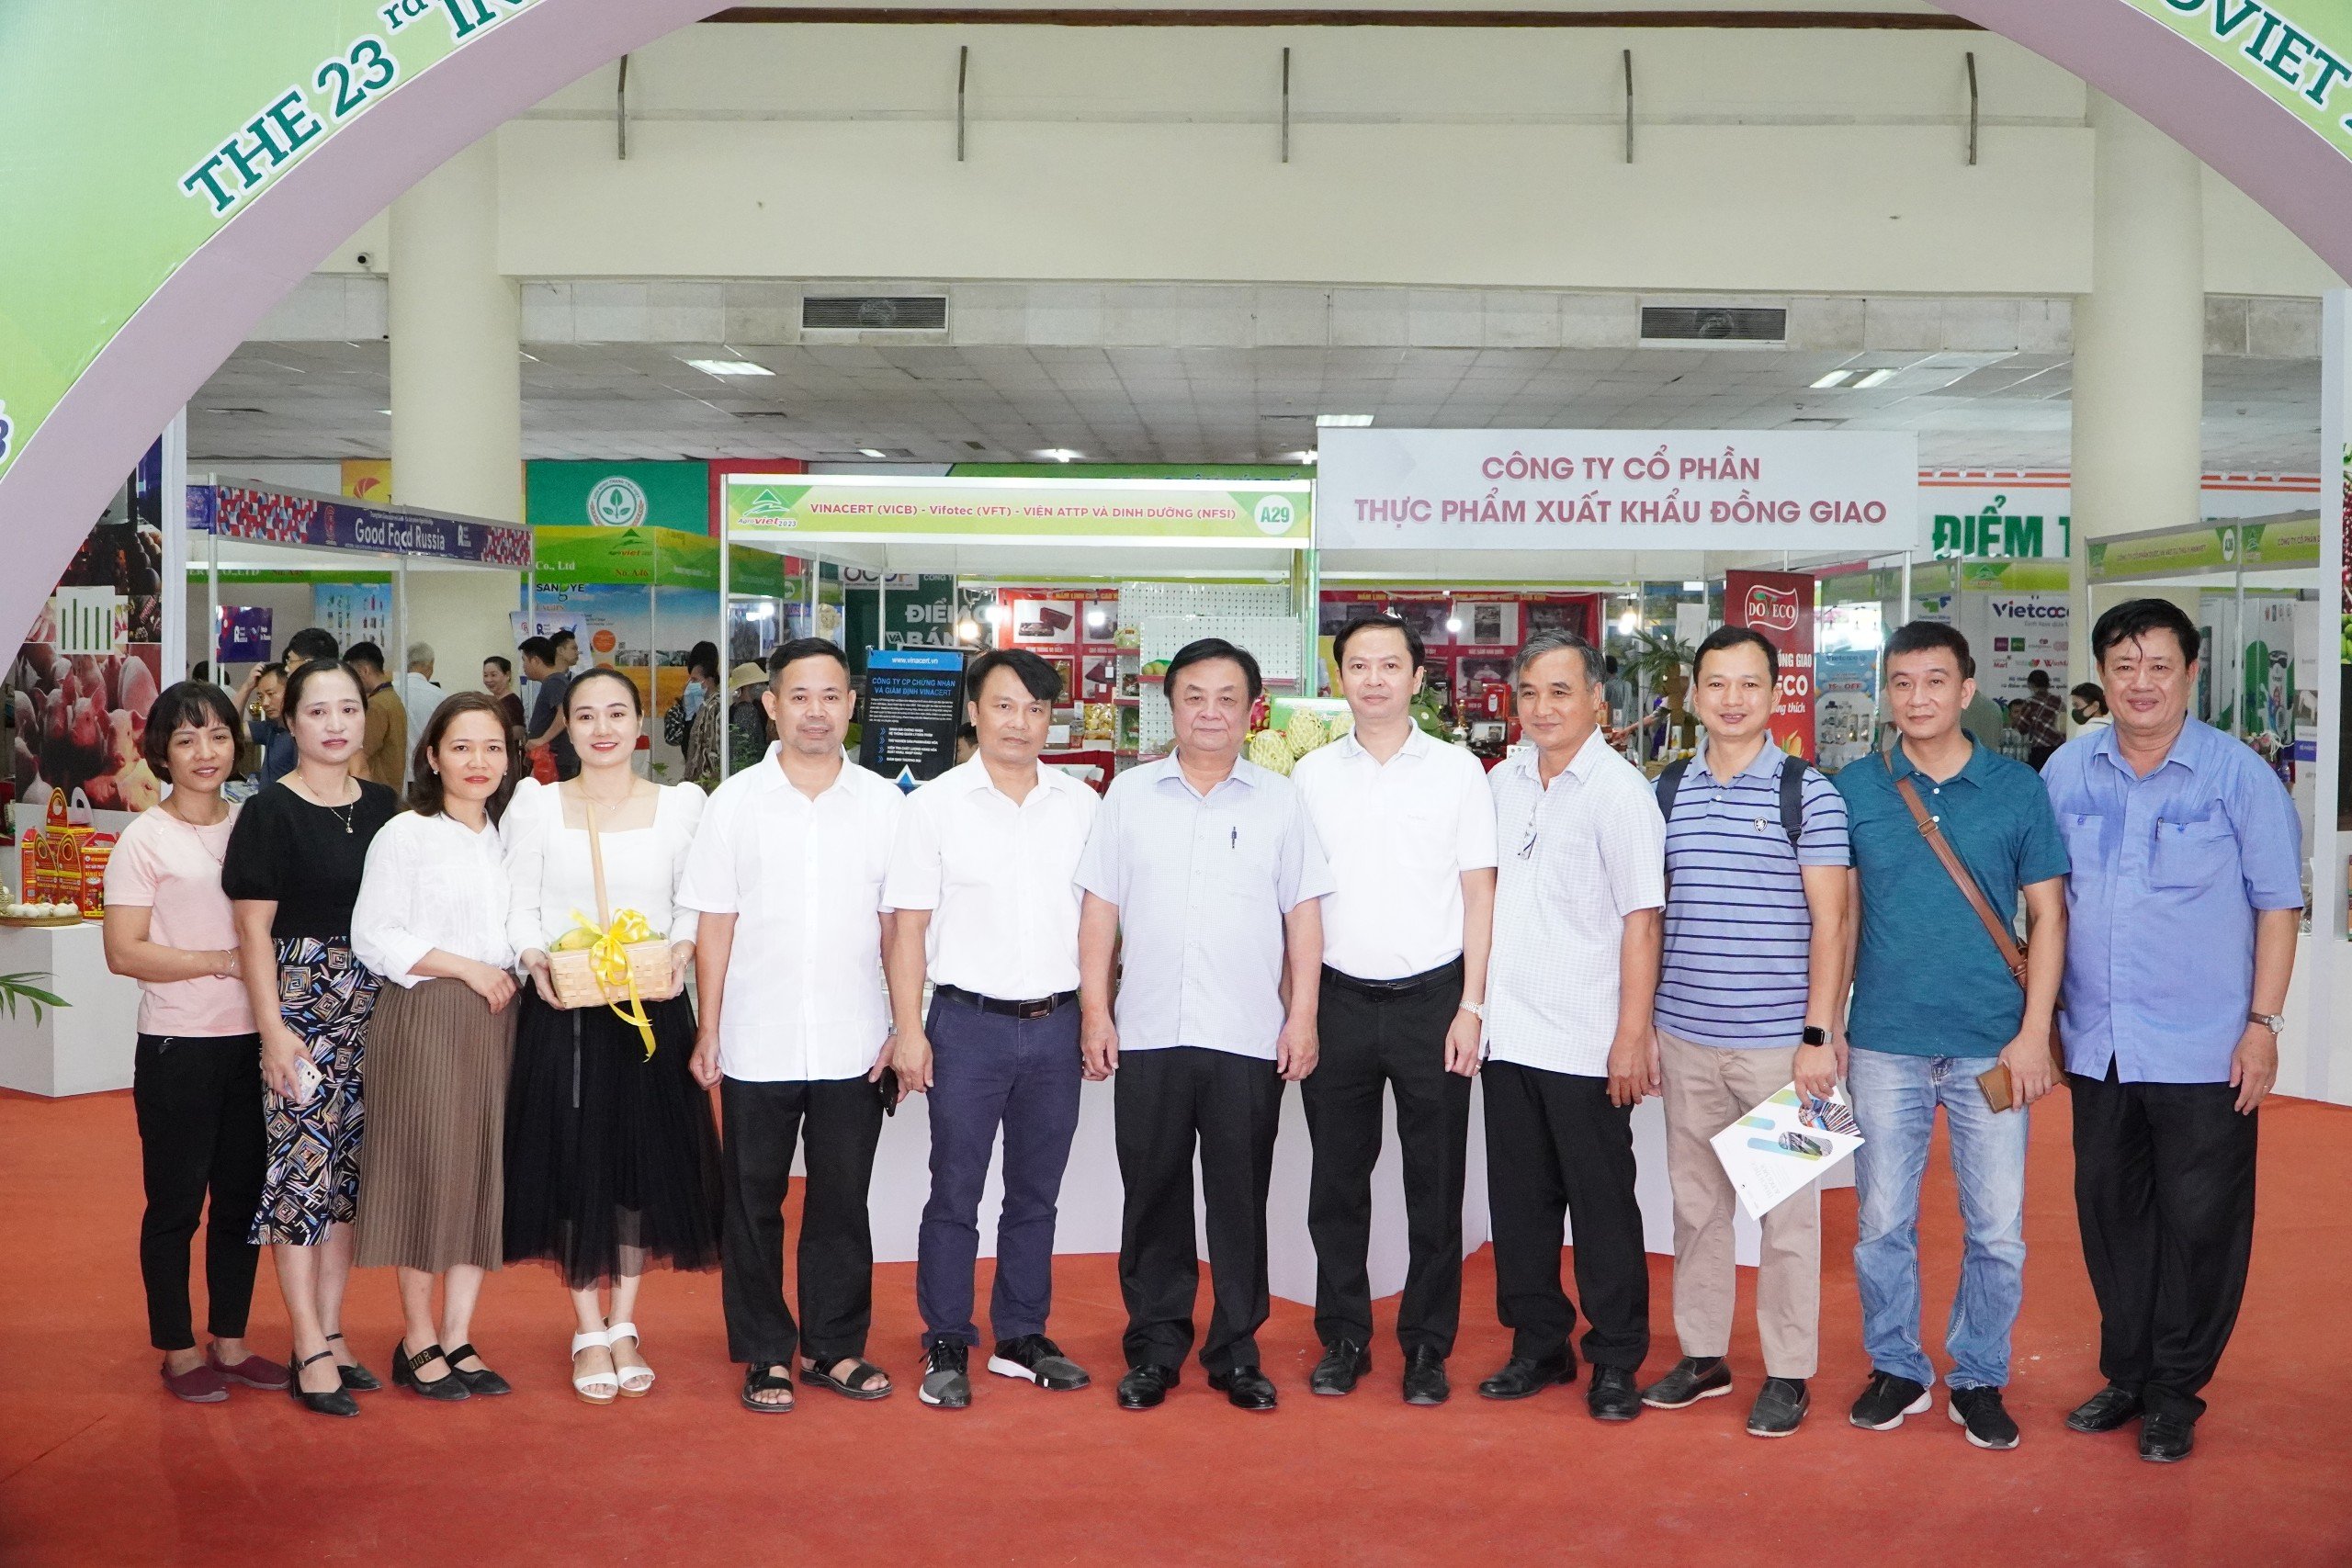 Thăm quan các gian hàng tại hội chợ vào ngày 16/9, Bộ trưởng Lê Minh Hoan nhấn mạnh rằng: “AgroViet 2023 là cơ hội để các địa phương, doanh nghiệp, hợp tác xã trao đổi, học hỏi lẫn nhau những kinh nghiệm quý trong sản xuất, xây dựng thương hiệu, tiêu thụ sản phẩm”.